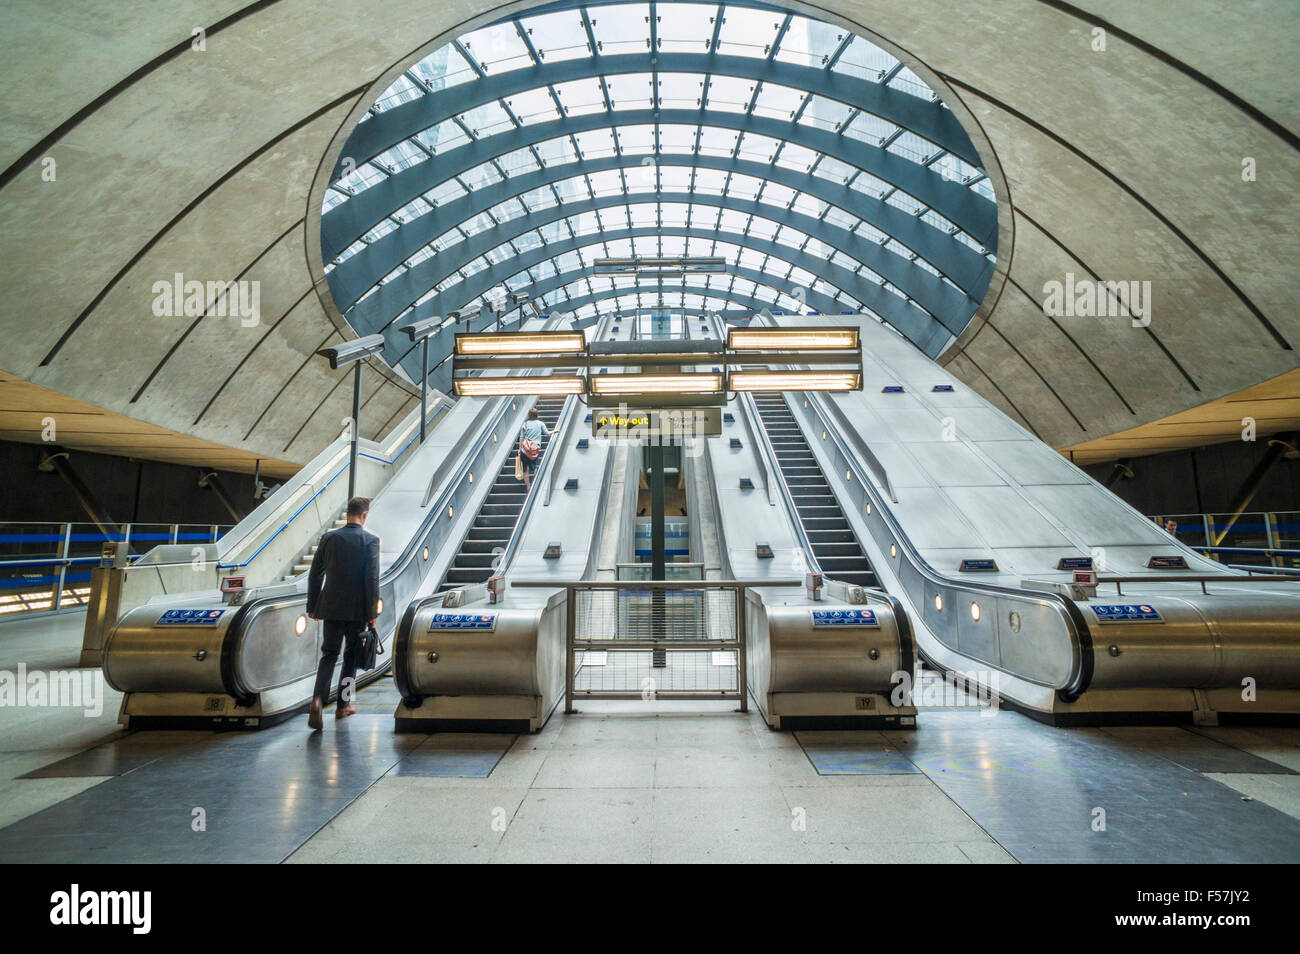 Canary Wharf DLR stazione metropolitana di ingresso con scale mobili Londra Inghilterra Regno unito Gb EU Europe Foto Stock